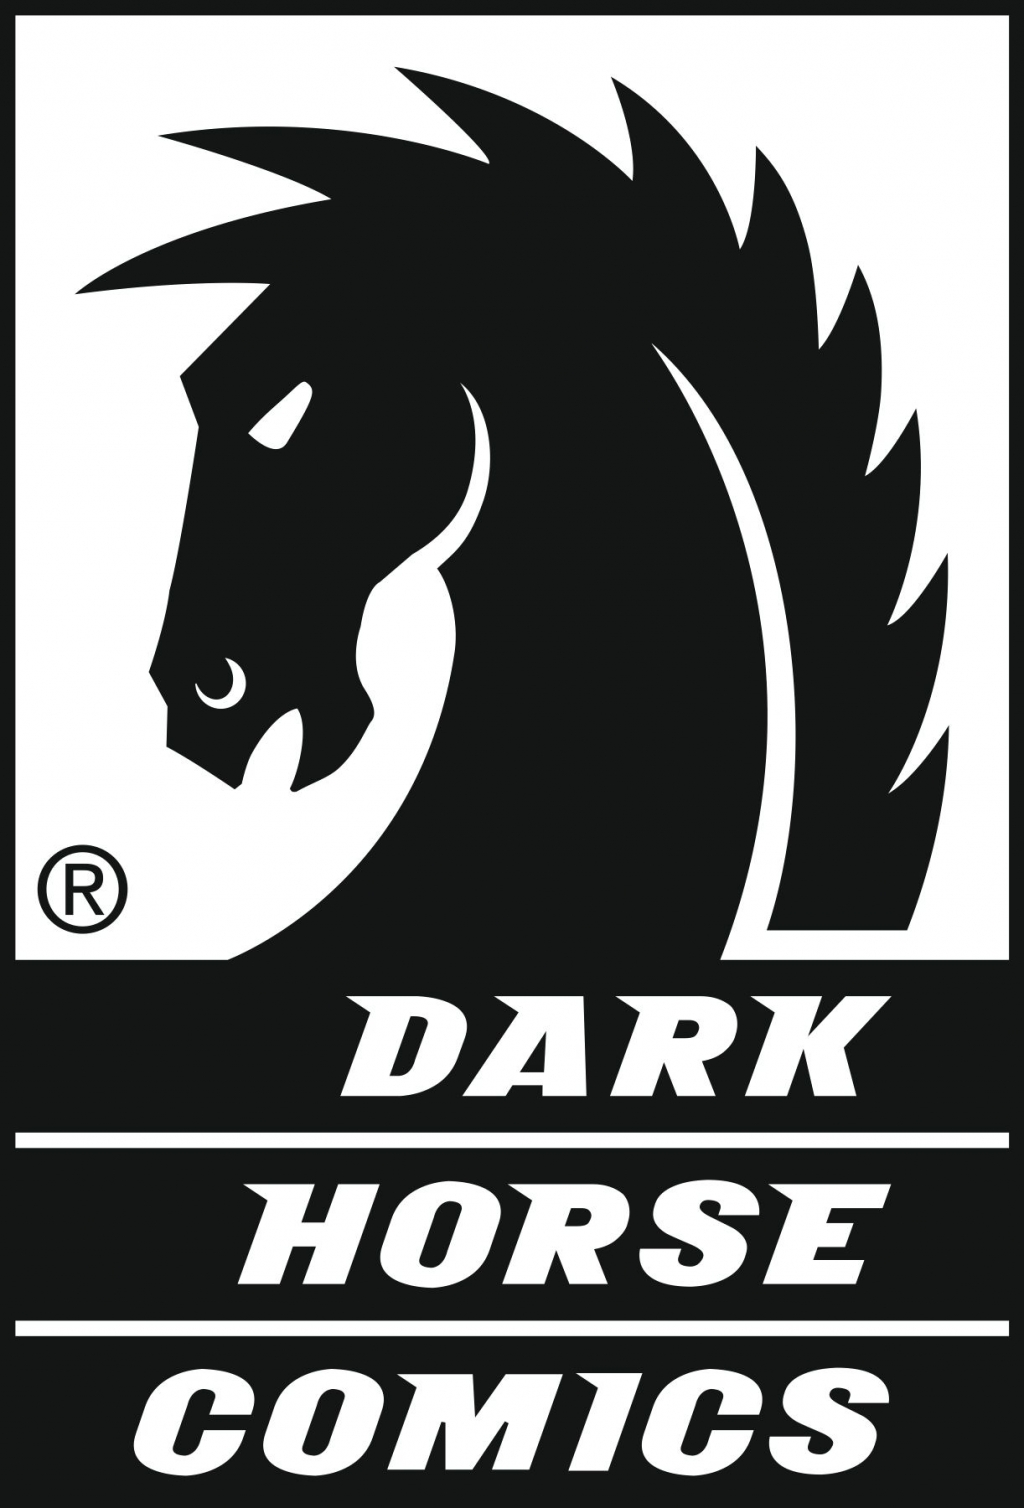 The Evil Dead #1 :: Profile :: Dark Horse Comics